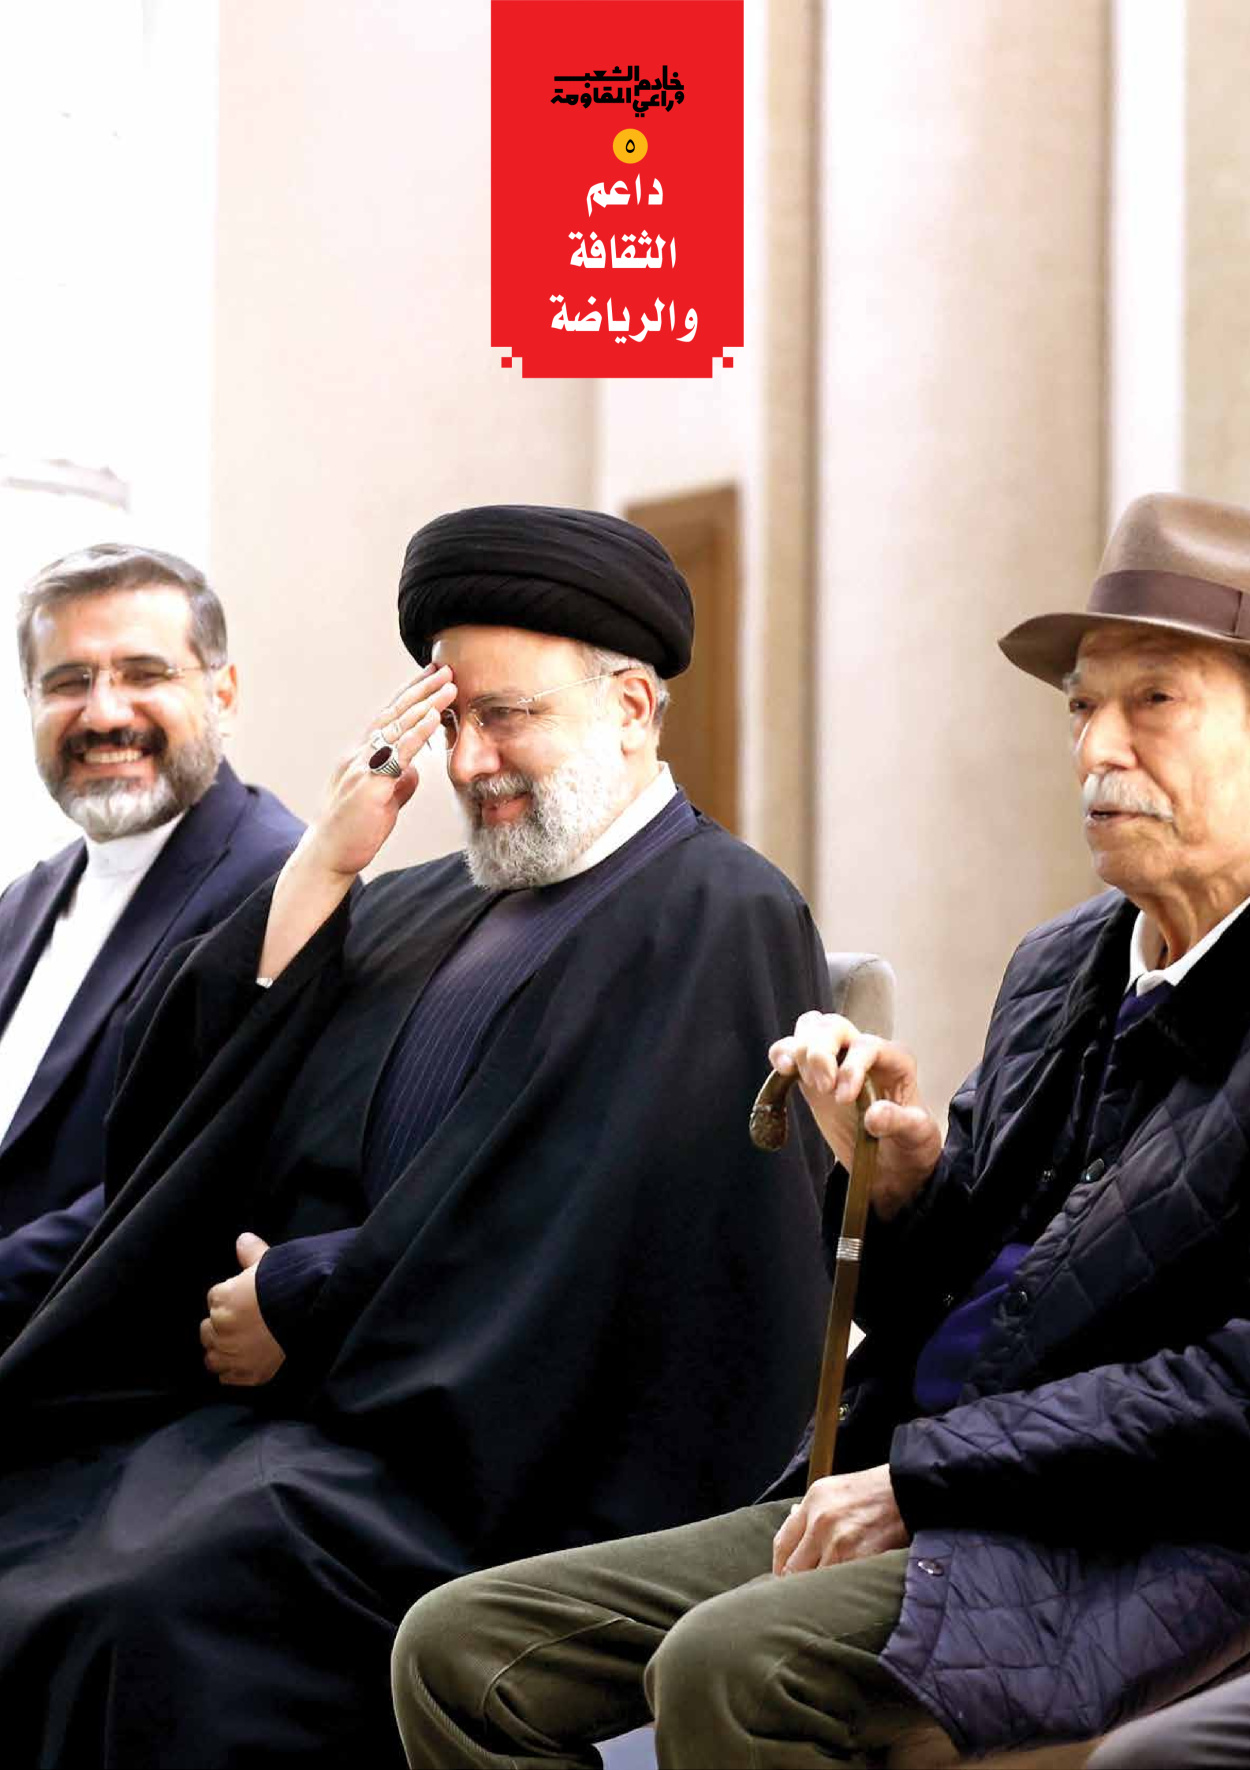 صحیفة ایران الدولیة الوفاق - ملحق ویژه نامه چهلم شهید رییسی - ٢٩ يونيو ٢٠٢٤ - الصفحة ۷۱